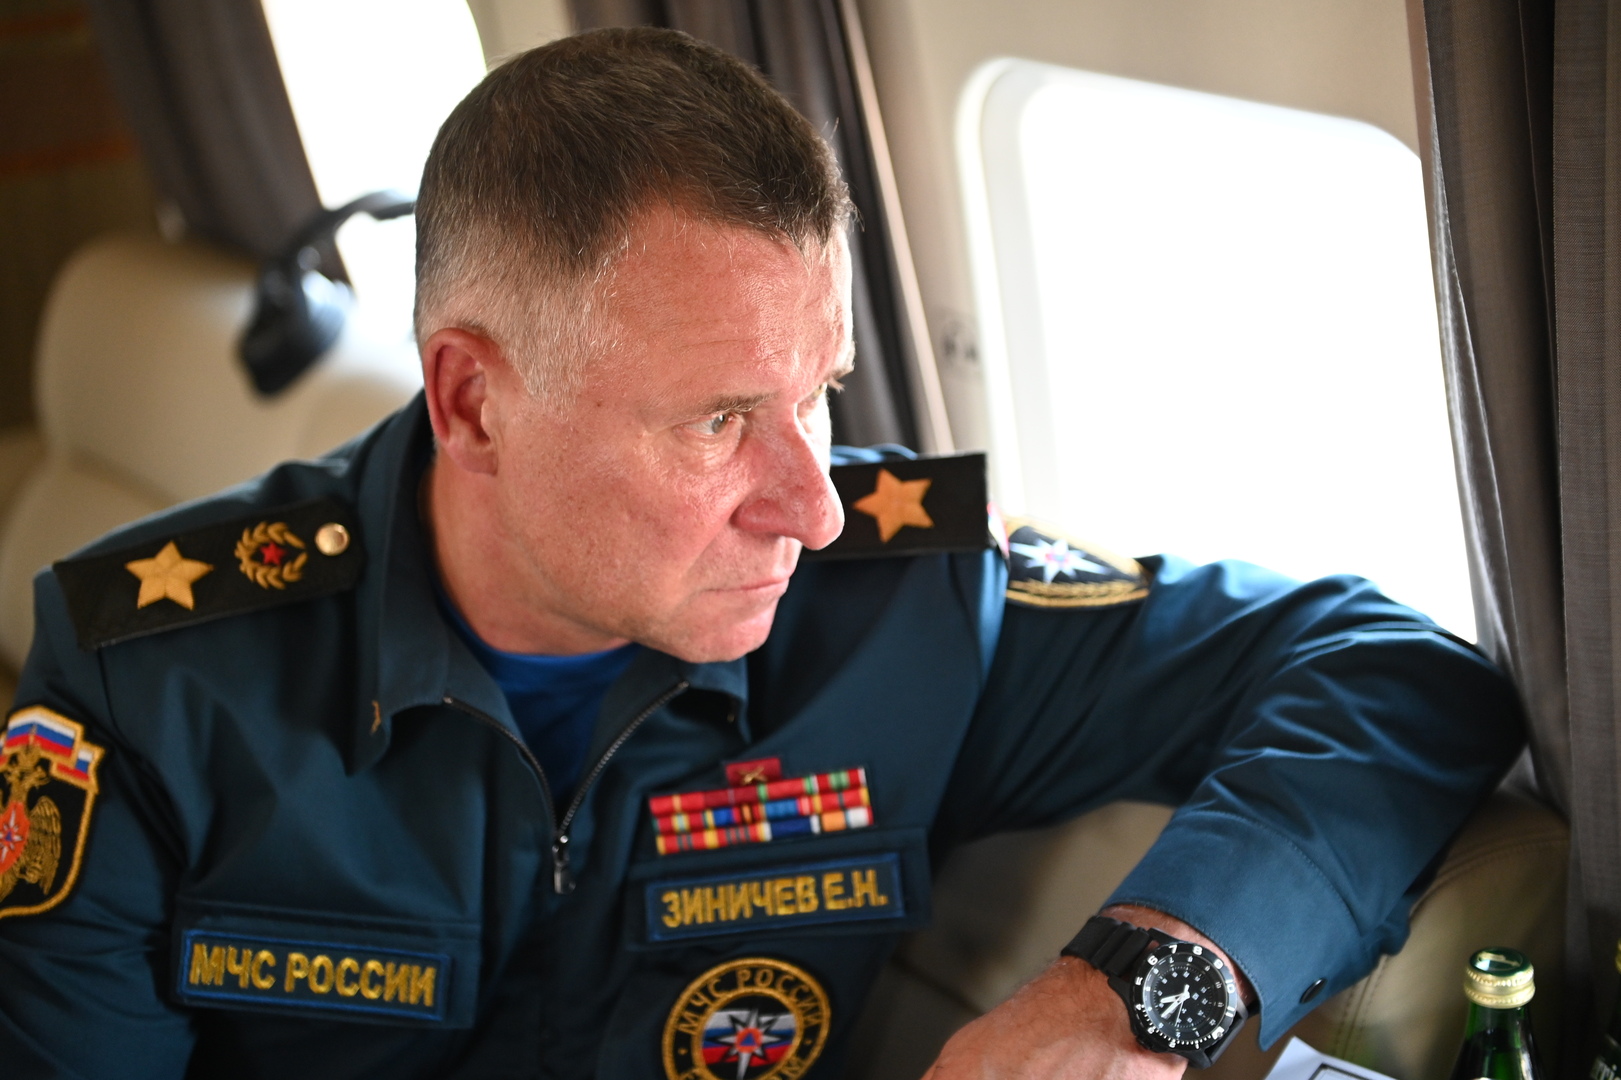 وفاة وزير الطوارئ الروسي لدى محاولته إنقاذ شخص خلال تدريبات